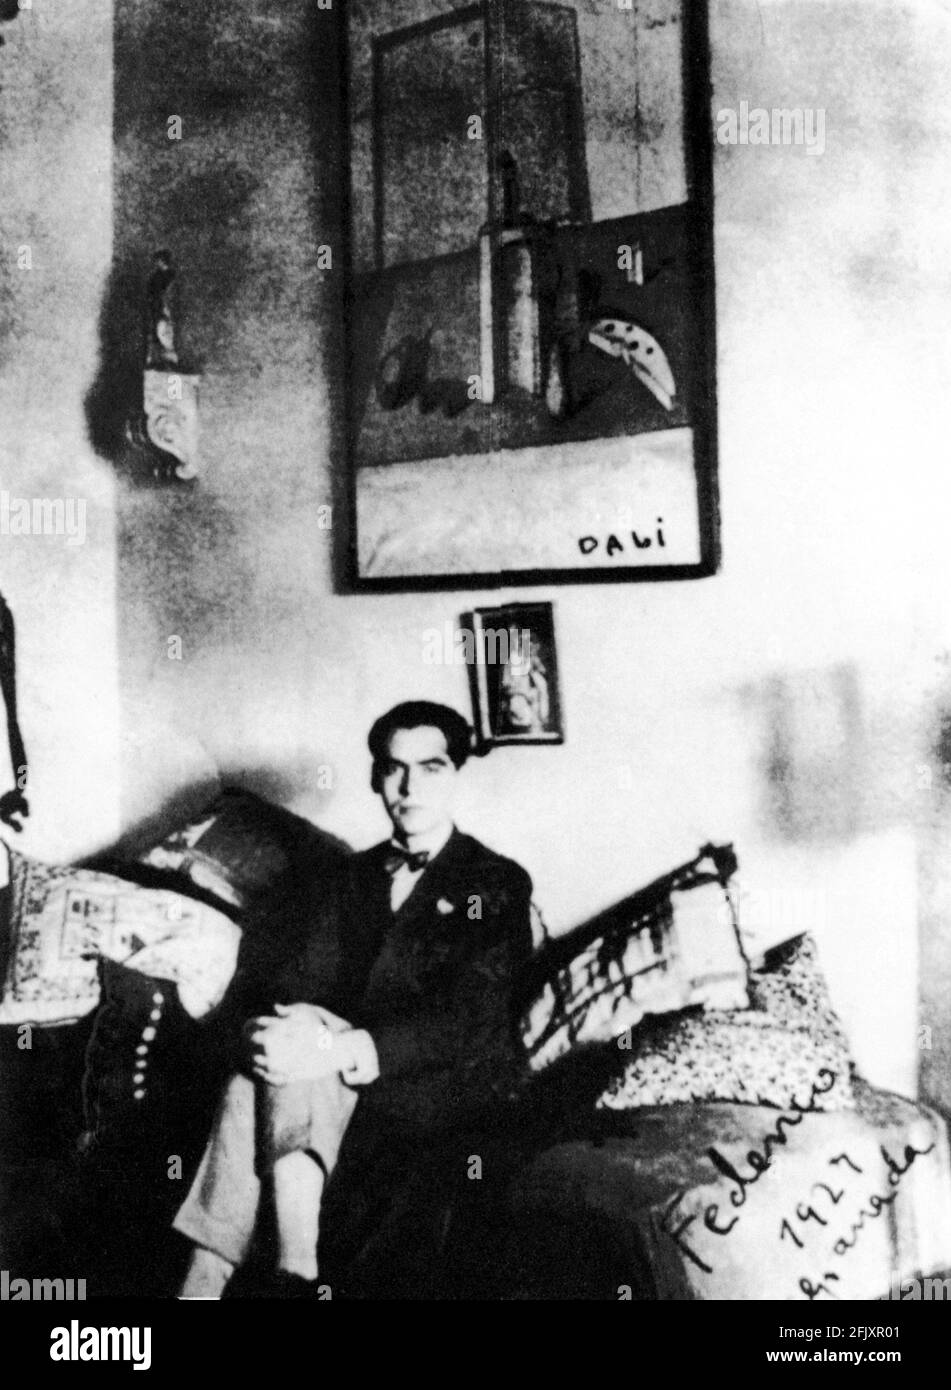 1927 , Madrid , Spagna: Il poeta spagnolo FEDERICO GARCIA LORCA ( 1898 - 1936 ) con una pittura Salvador Dalì - TEATRO - POETA - POESIA - POESIA - SCRITTORE - DRAMMATURGO - GAY - LGBT - omosessuale - omosessualità - omosessualità - omosessuale - cravatta - papillon ---- Archivio GBB Foto Stock